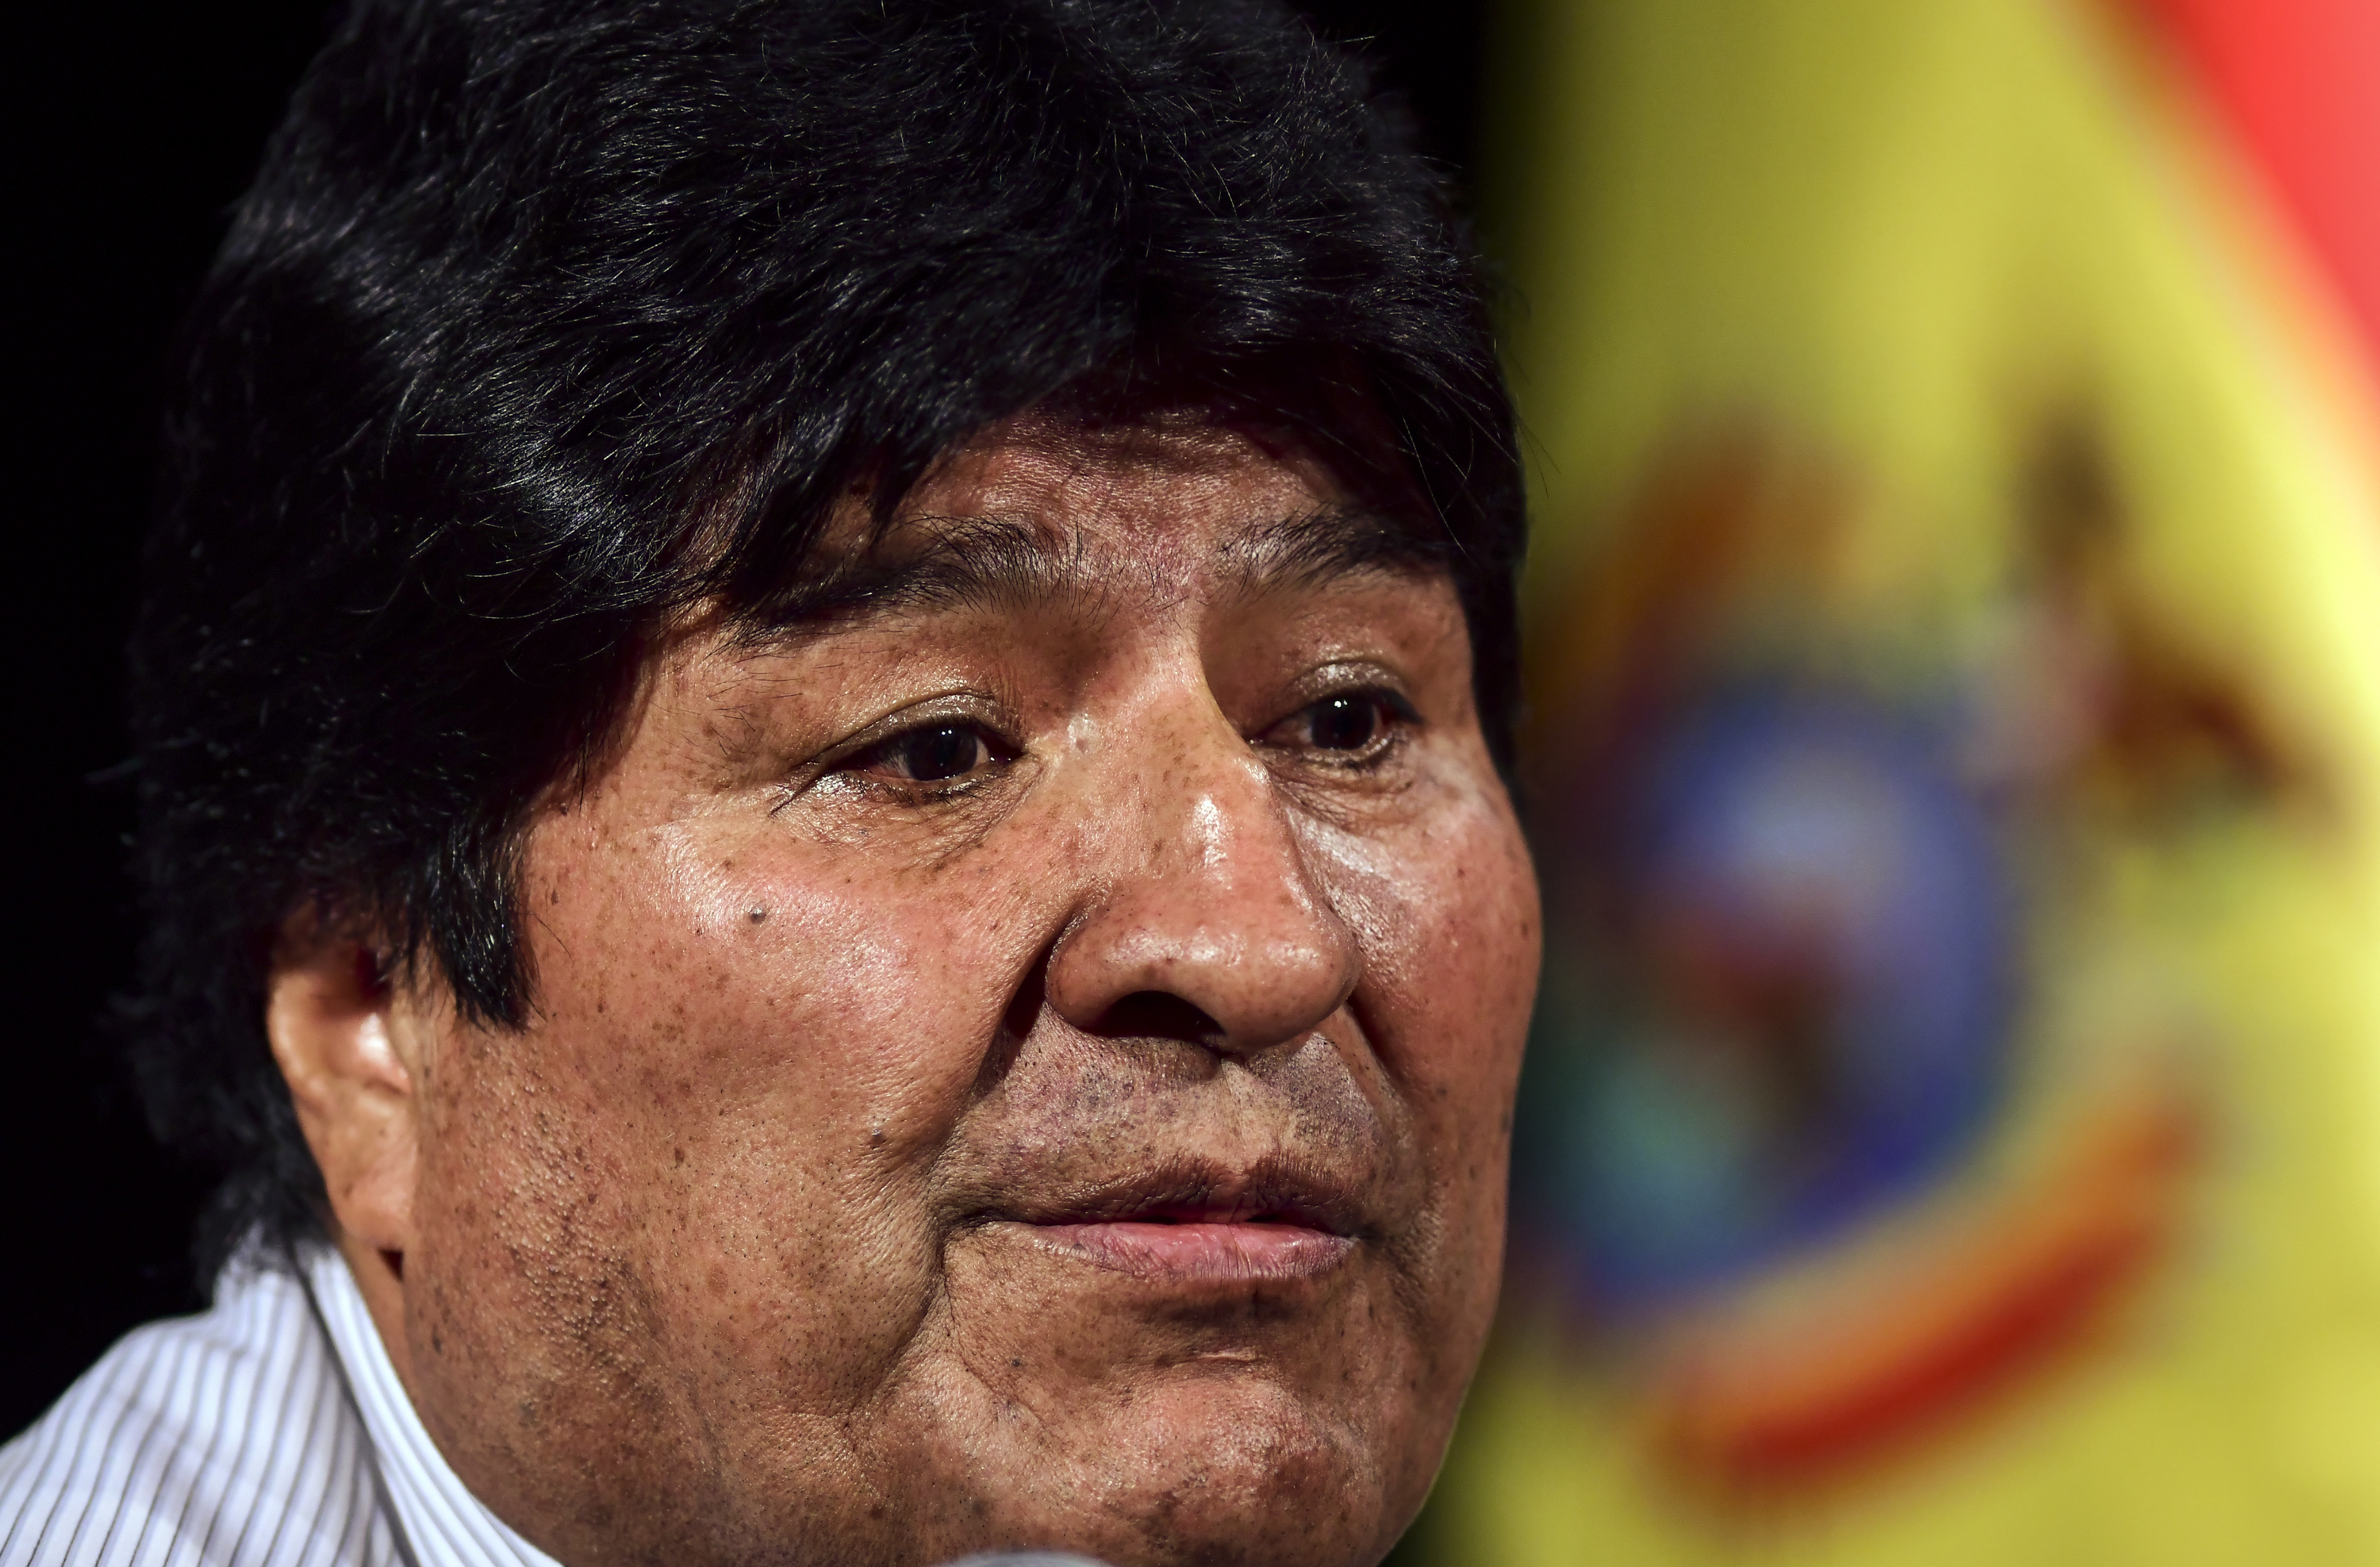 Gobierno boliviano denunció a Evo Morales tras acusaciones de pedofilia y trata de personas